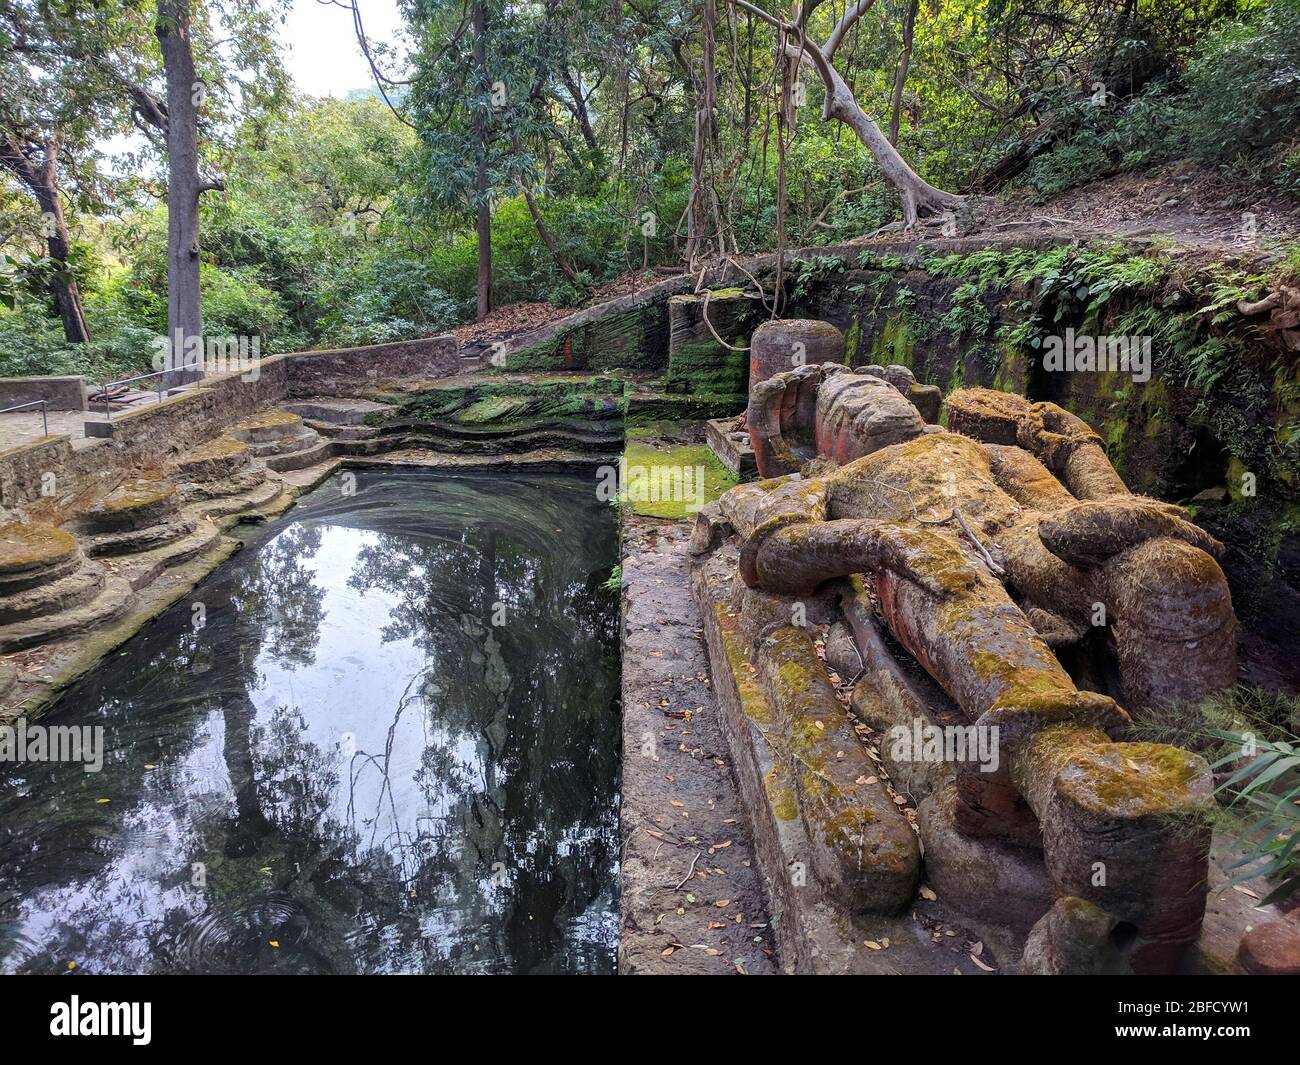 Un quadro paesaggistico delle rovine storiche del Parco Nazionale di Bandhavgarh, Madhya Pradesh, India Foto Stock